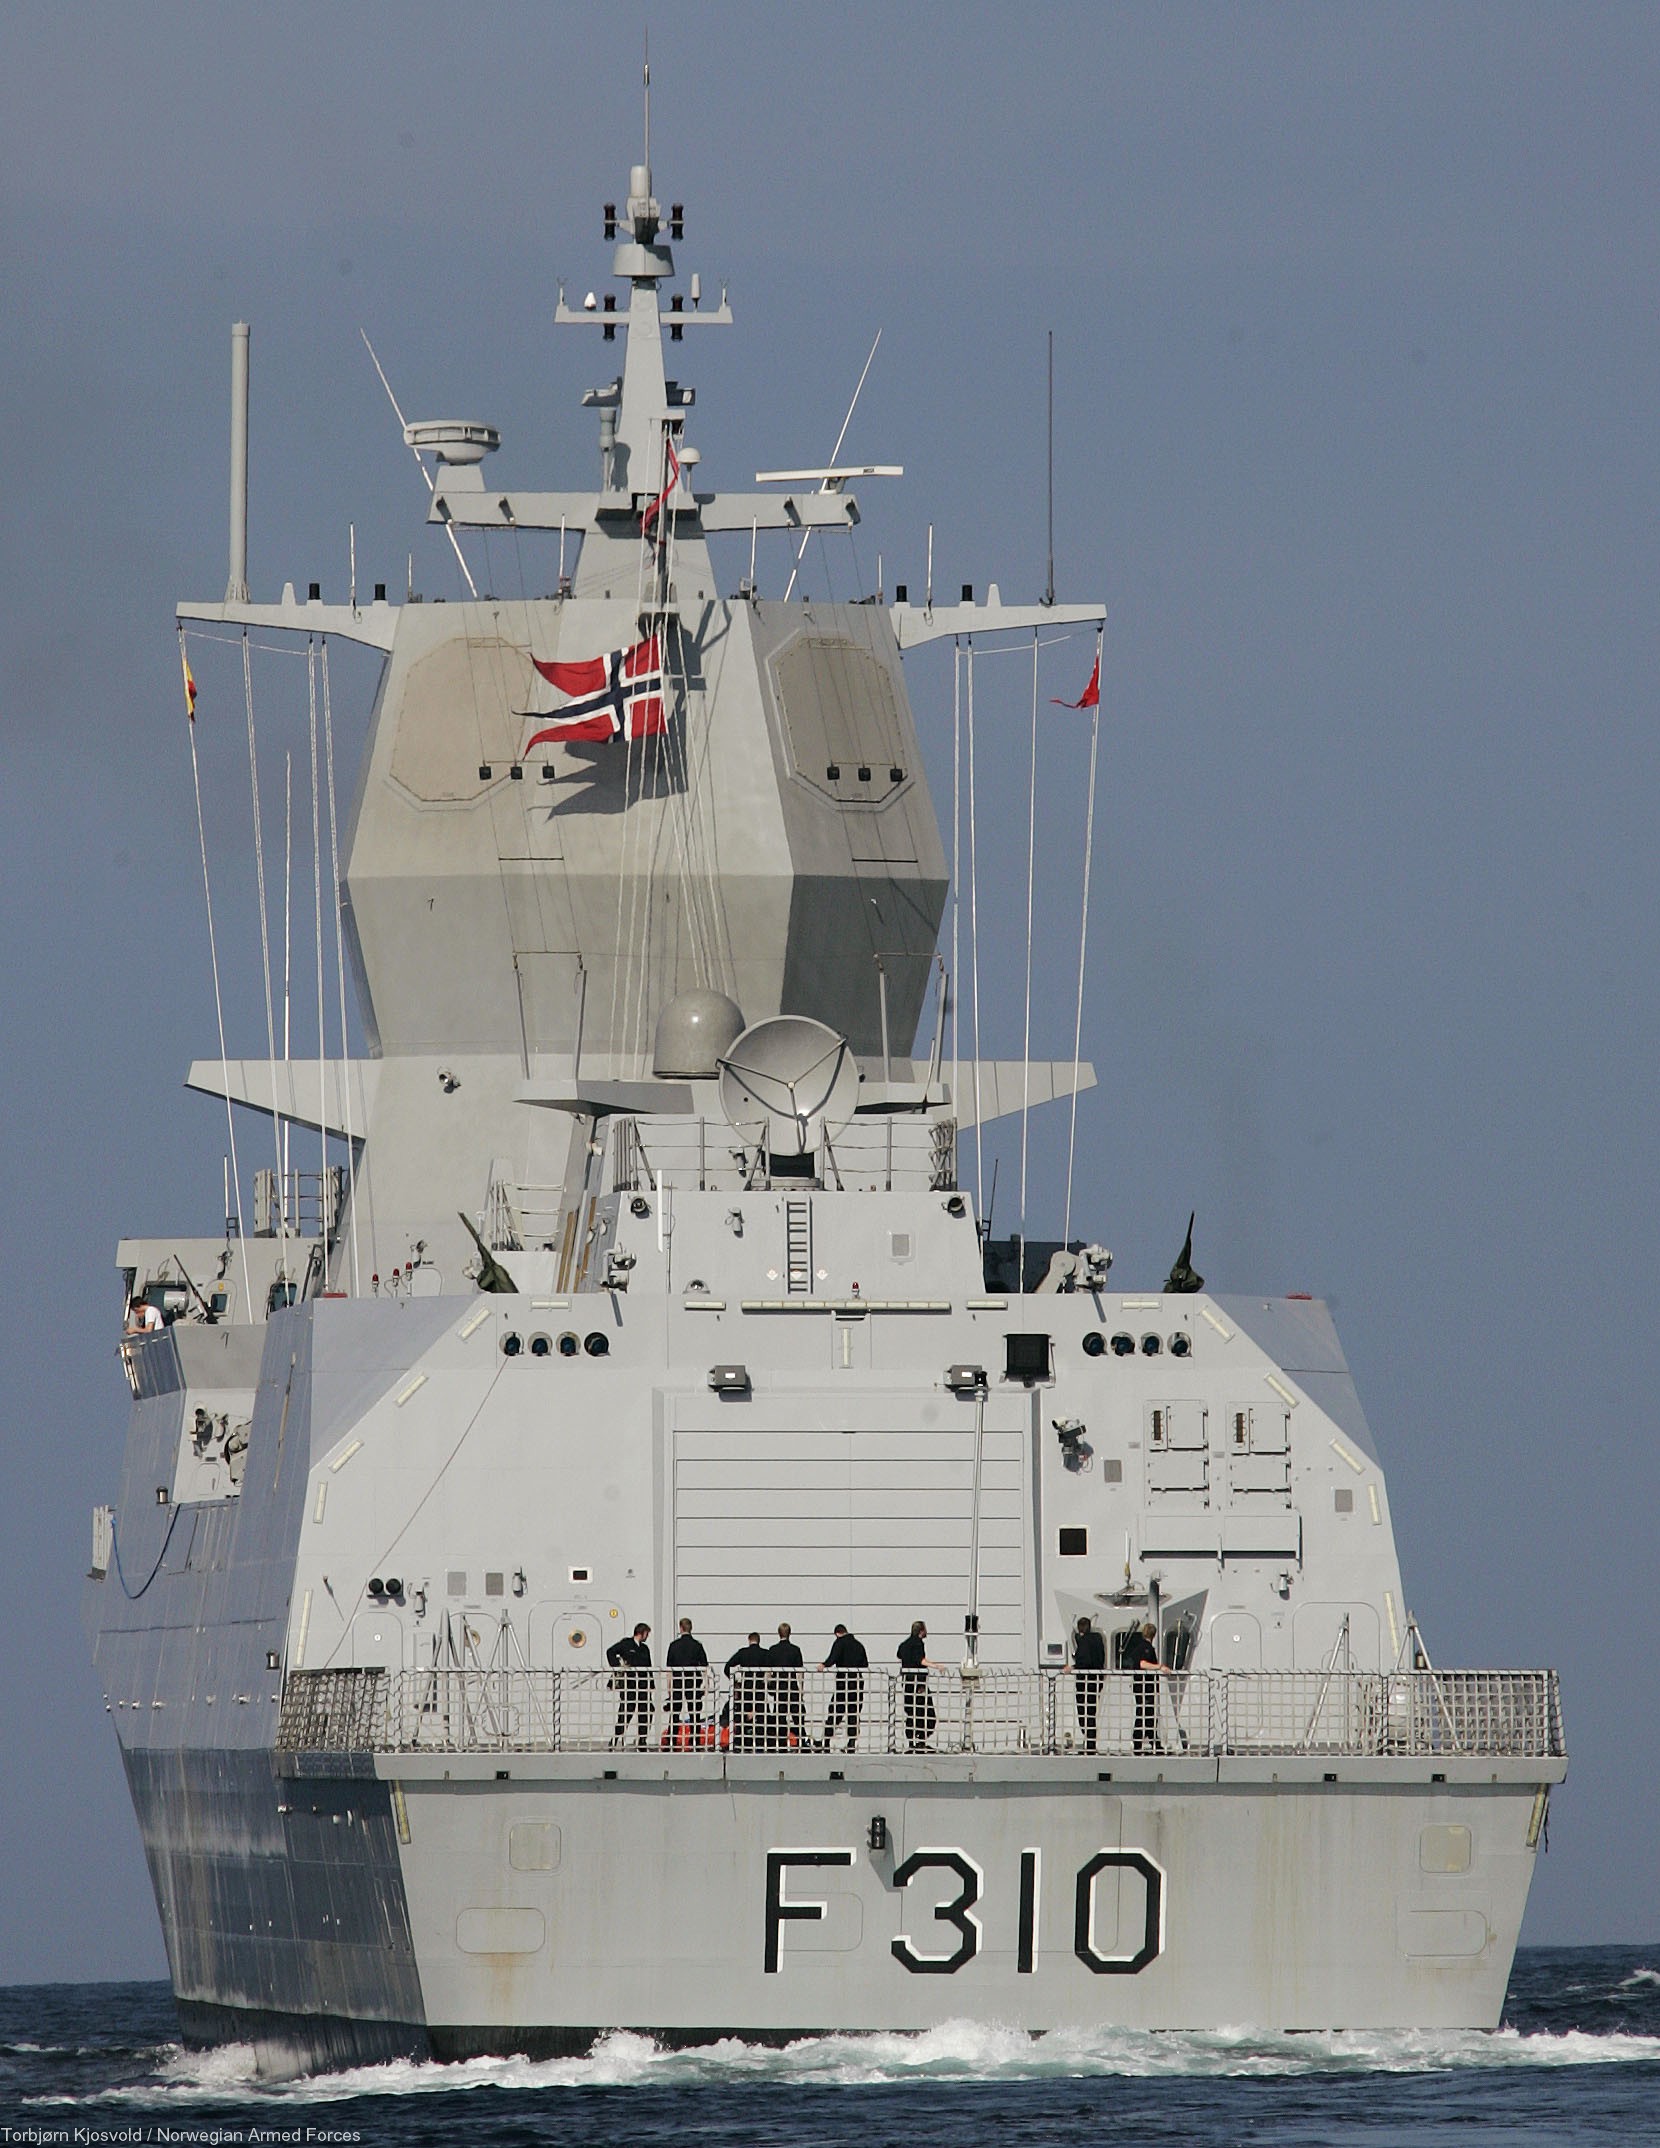 f-310 fridtjof nansen hnoms knm frigate royal norwegian navy sjoforsvaret 70